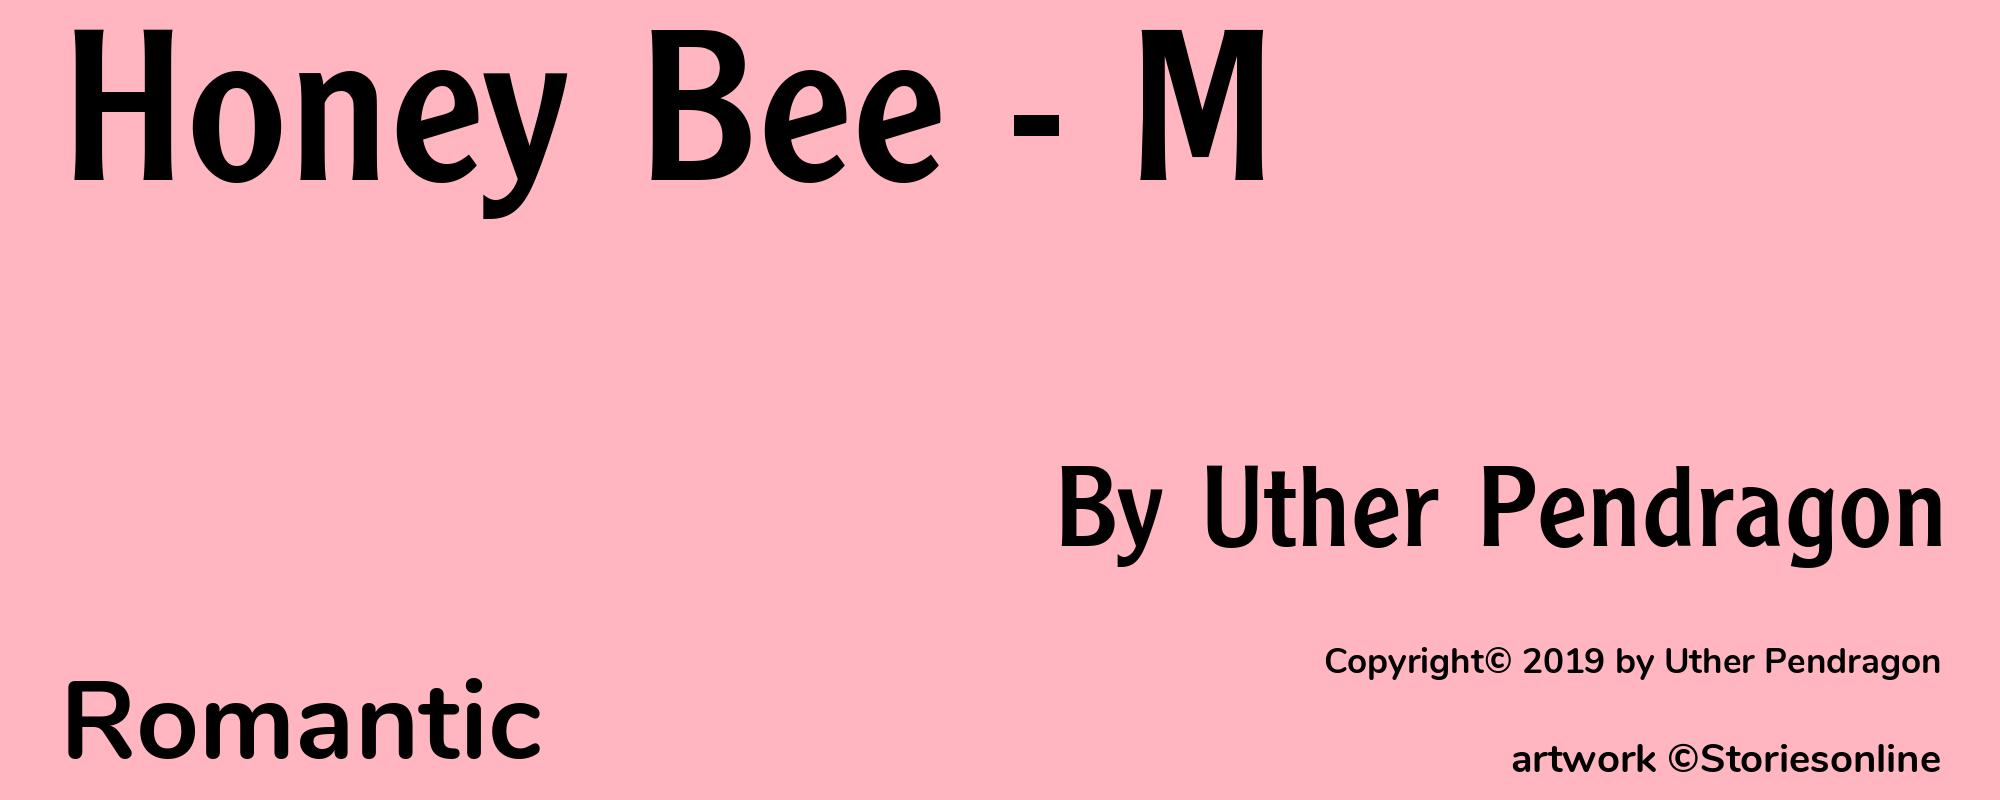 Honey Bee - M - Cover